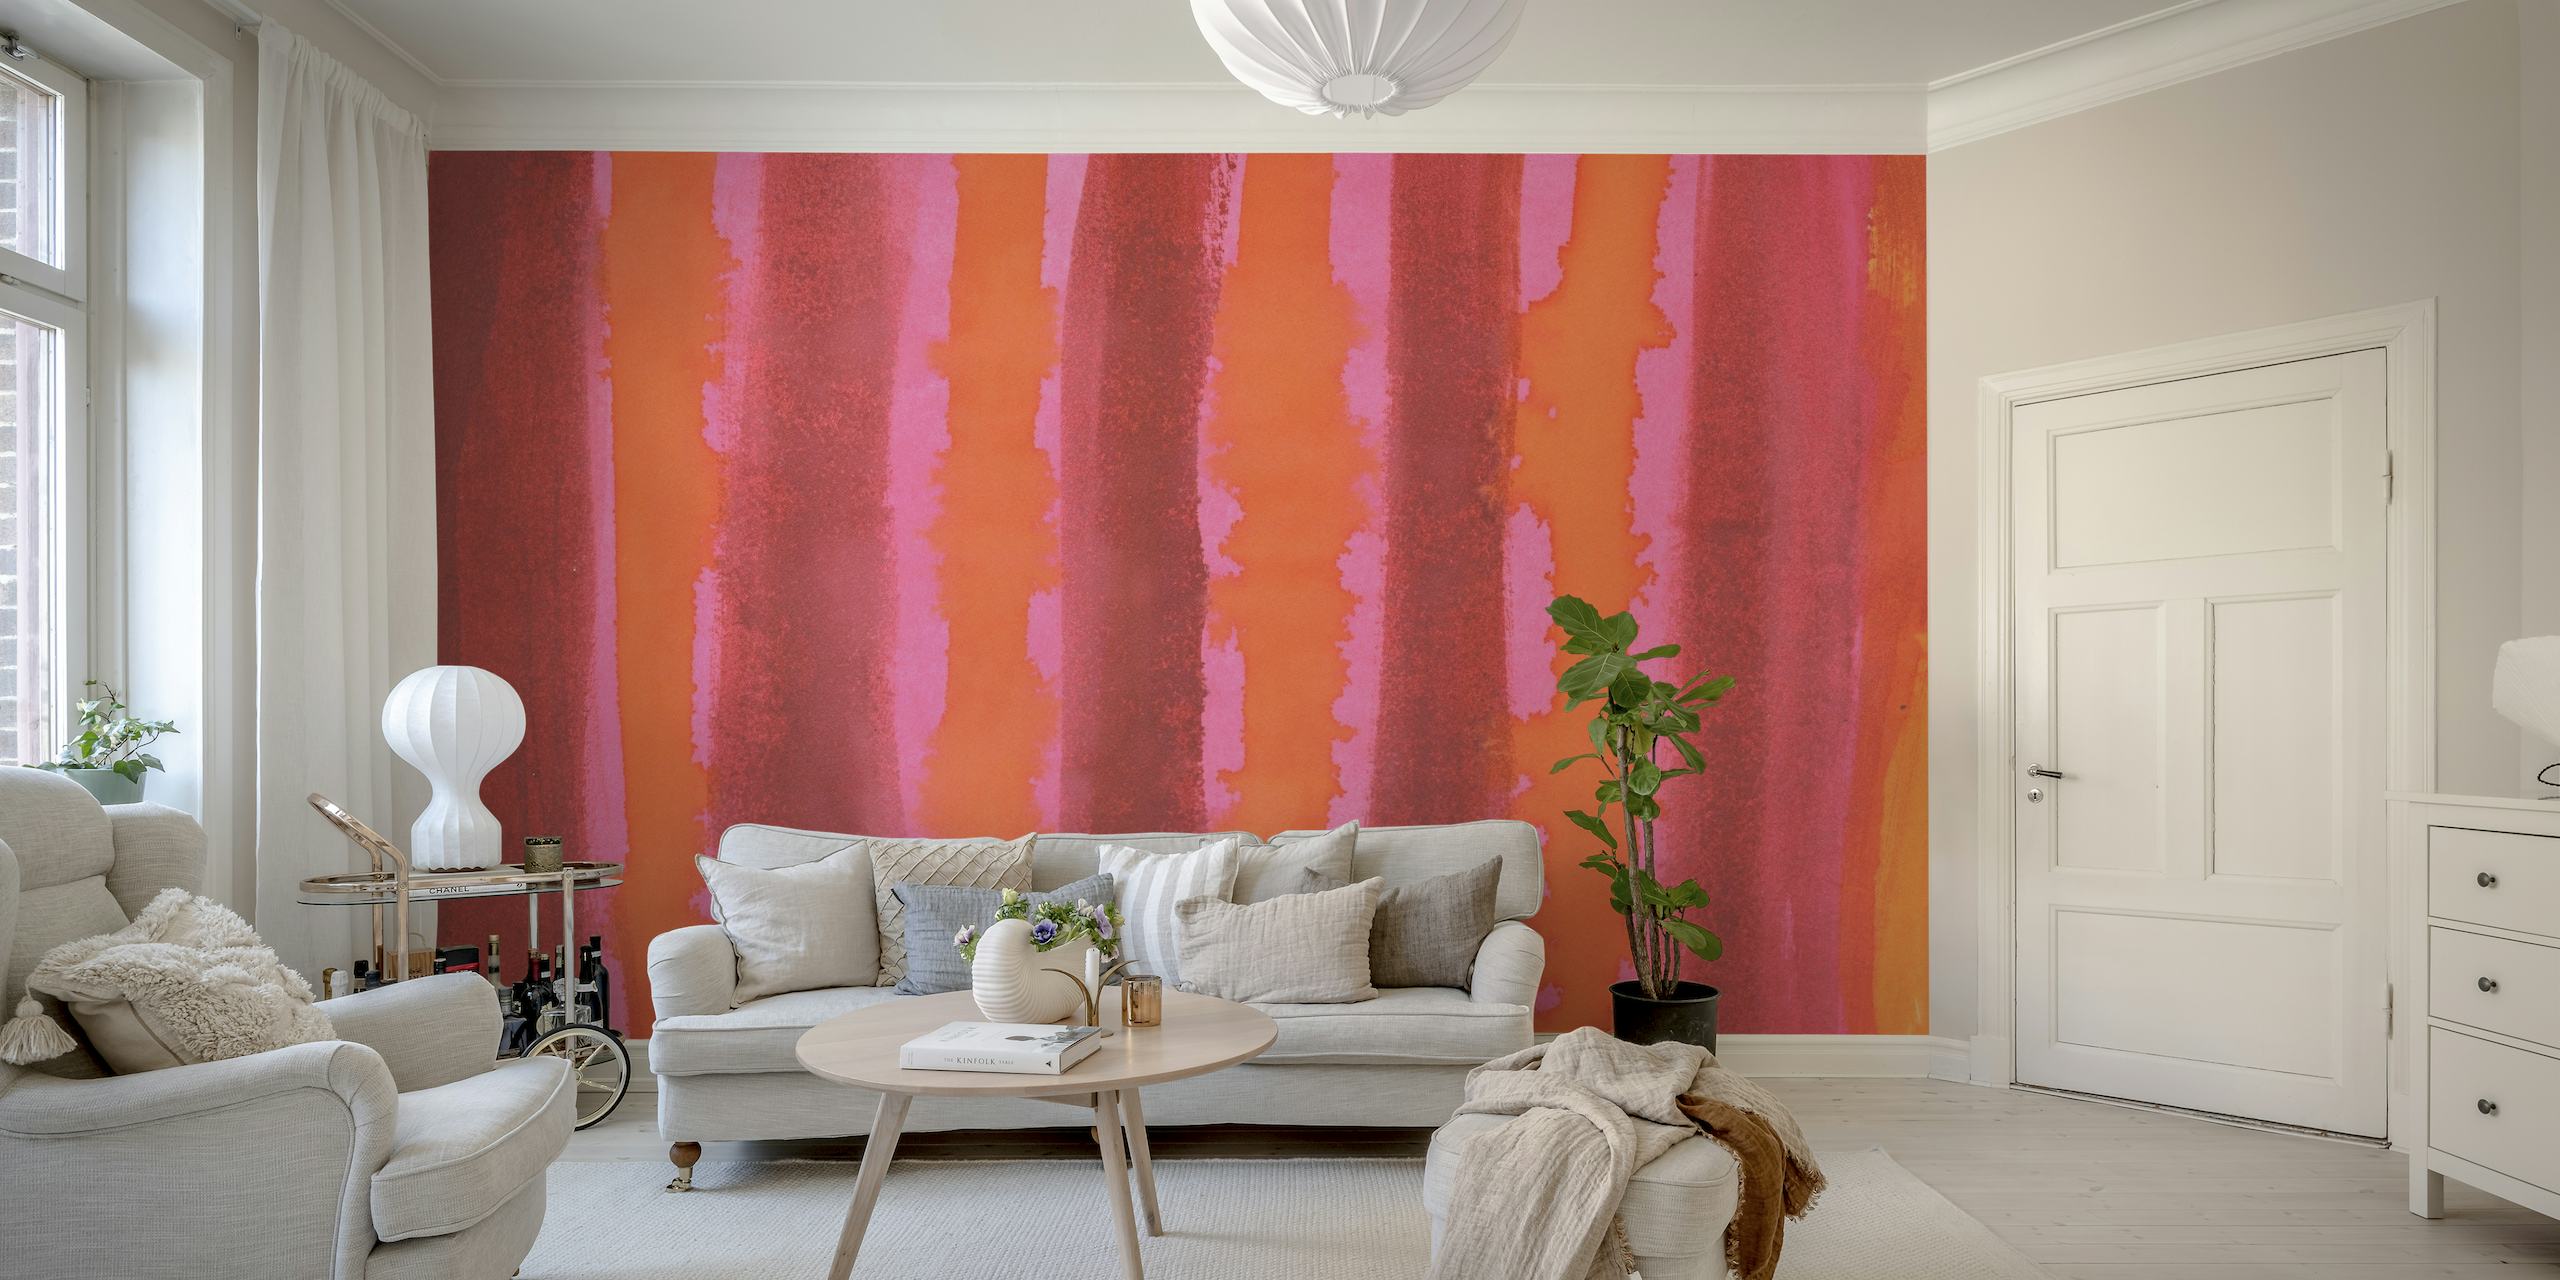 Bright Watercolor Stripes wallpaper